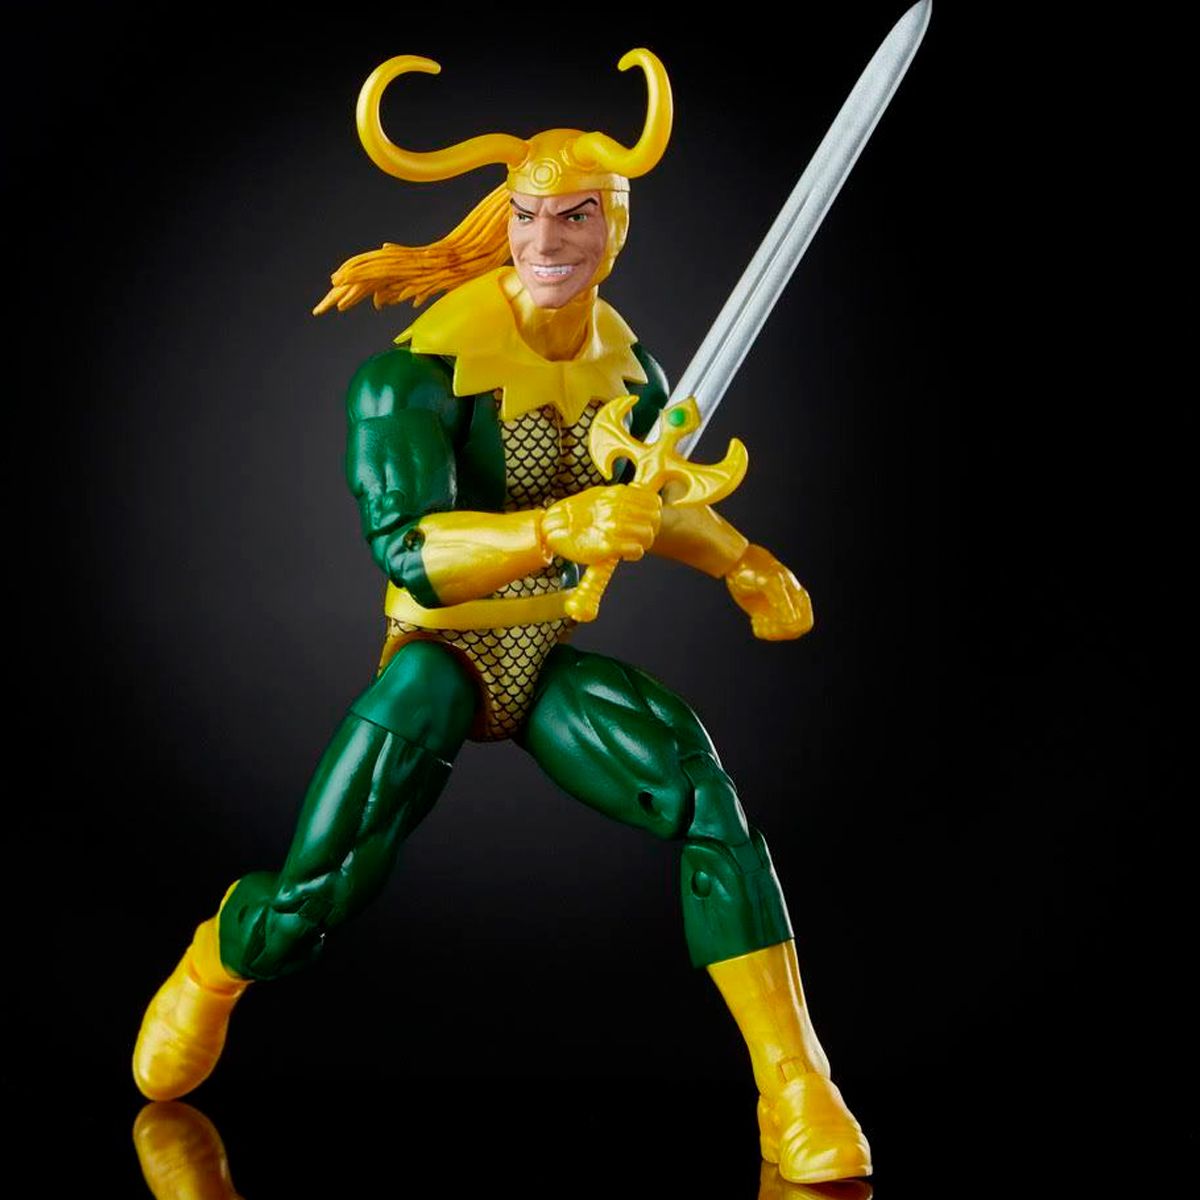 Marvel Legends Loki